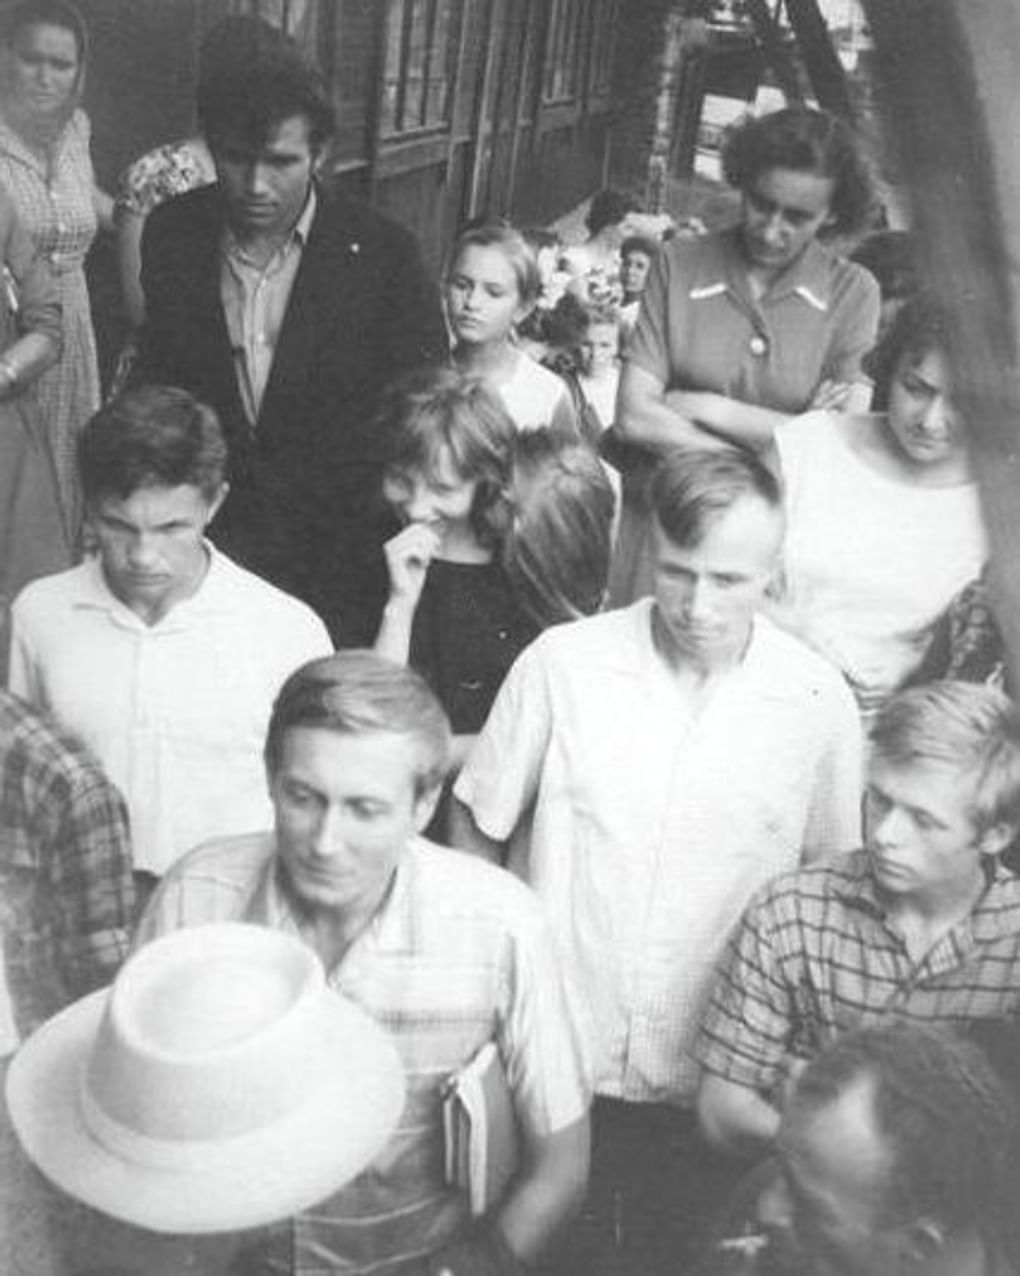 Евгений Евтушенко (впереди) и зрители. 1950-е годы. Мультимедиа Арт Музей, Москва